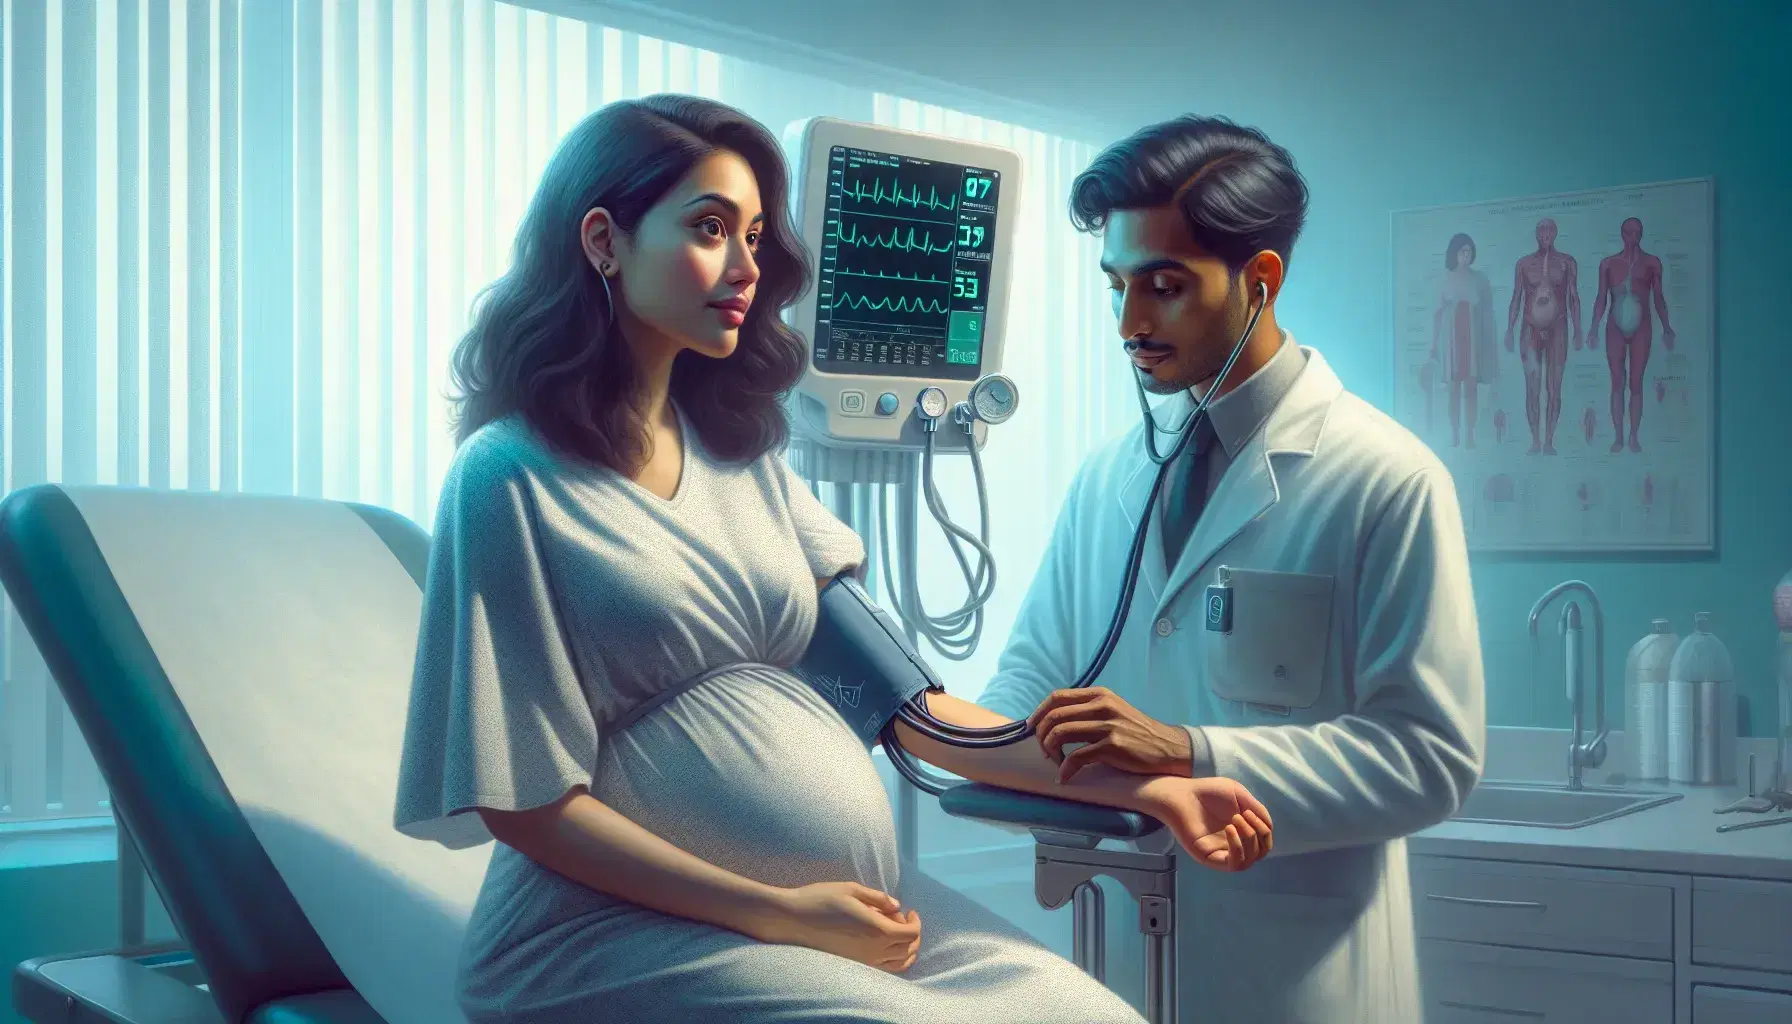 Mujer embarazada hispana recibiendo chequeo de presión arterial por profesional de la salud del sur de Asia en consulta prenatal, ambiente sereno con monitor de signos vitales al fondo.